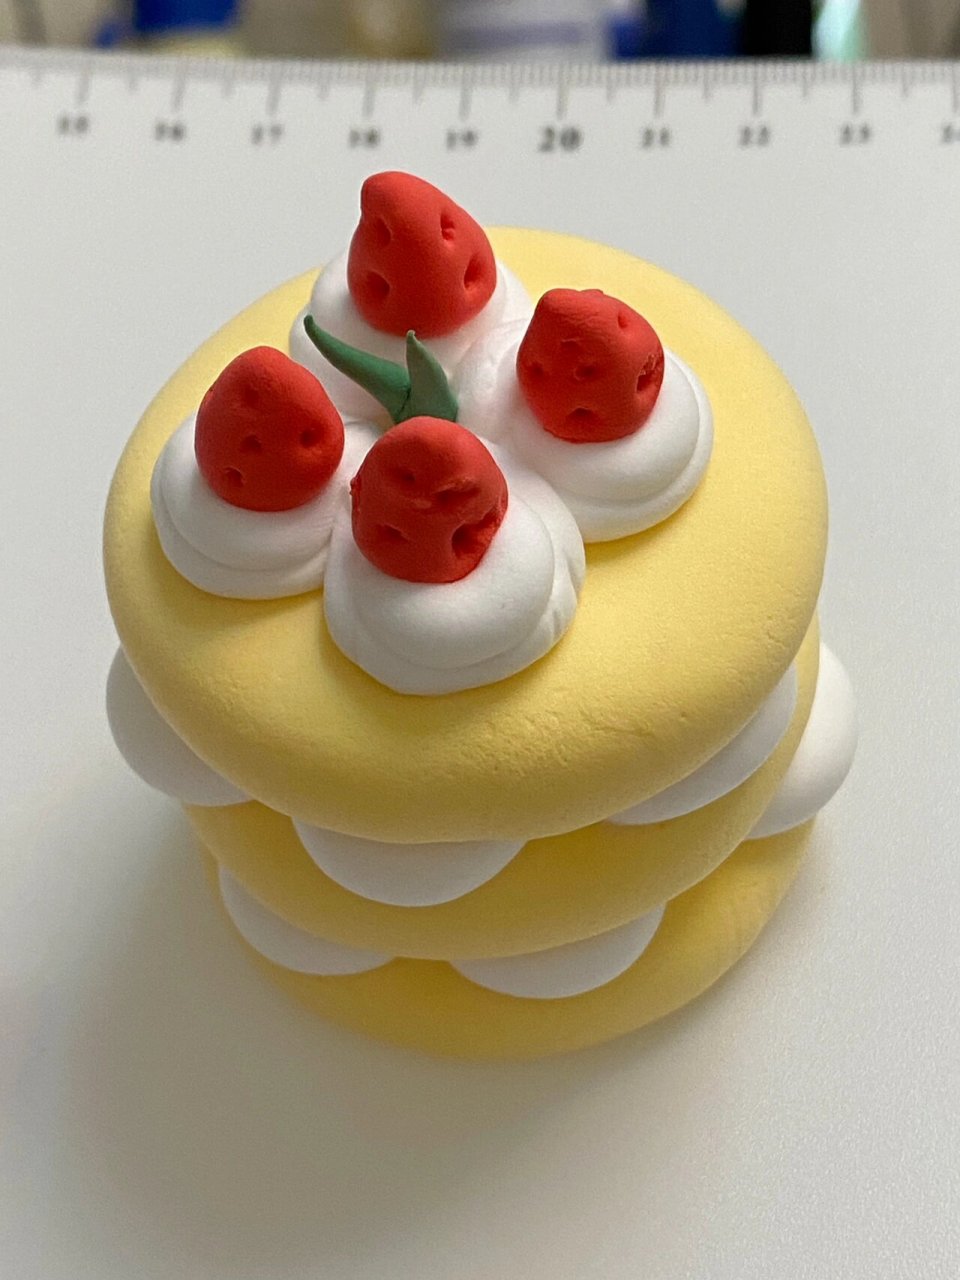 超轻粘土手工甜品🍮 粘土蛋糕 瑞士卷 马卡龙 草莓裸蛋糕 都是我的